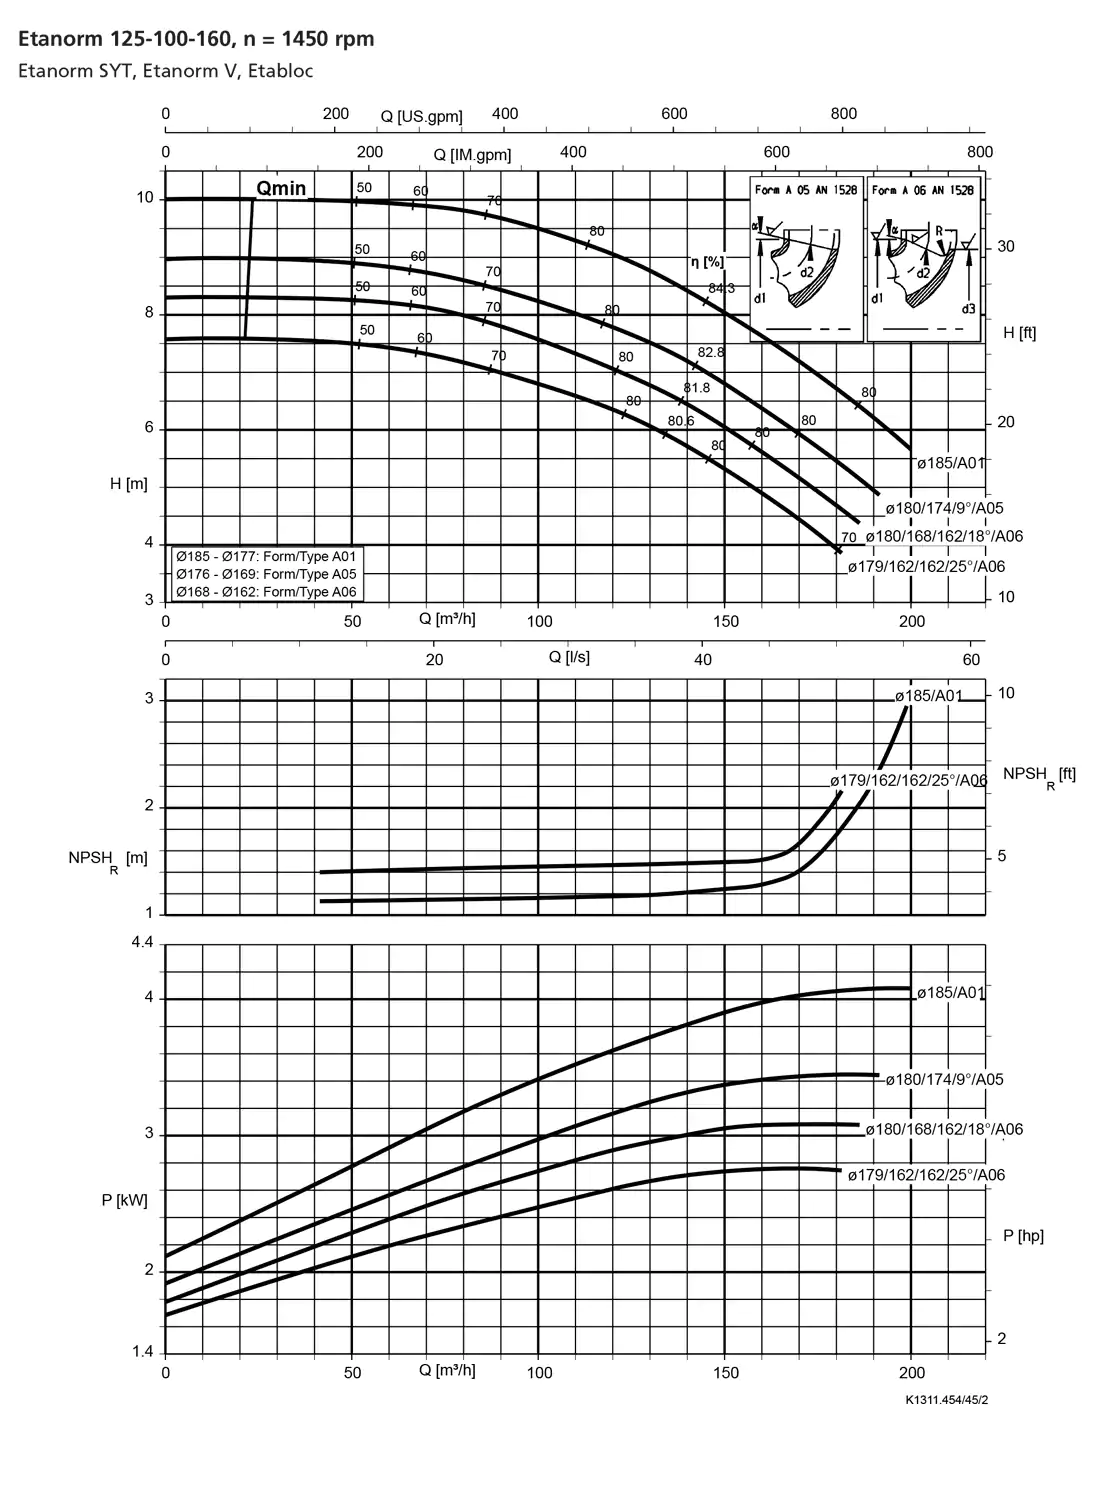 نمودار-کارکرد-پمپ-etanorm-125-100-160-1450